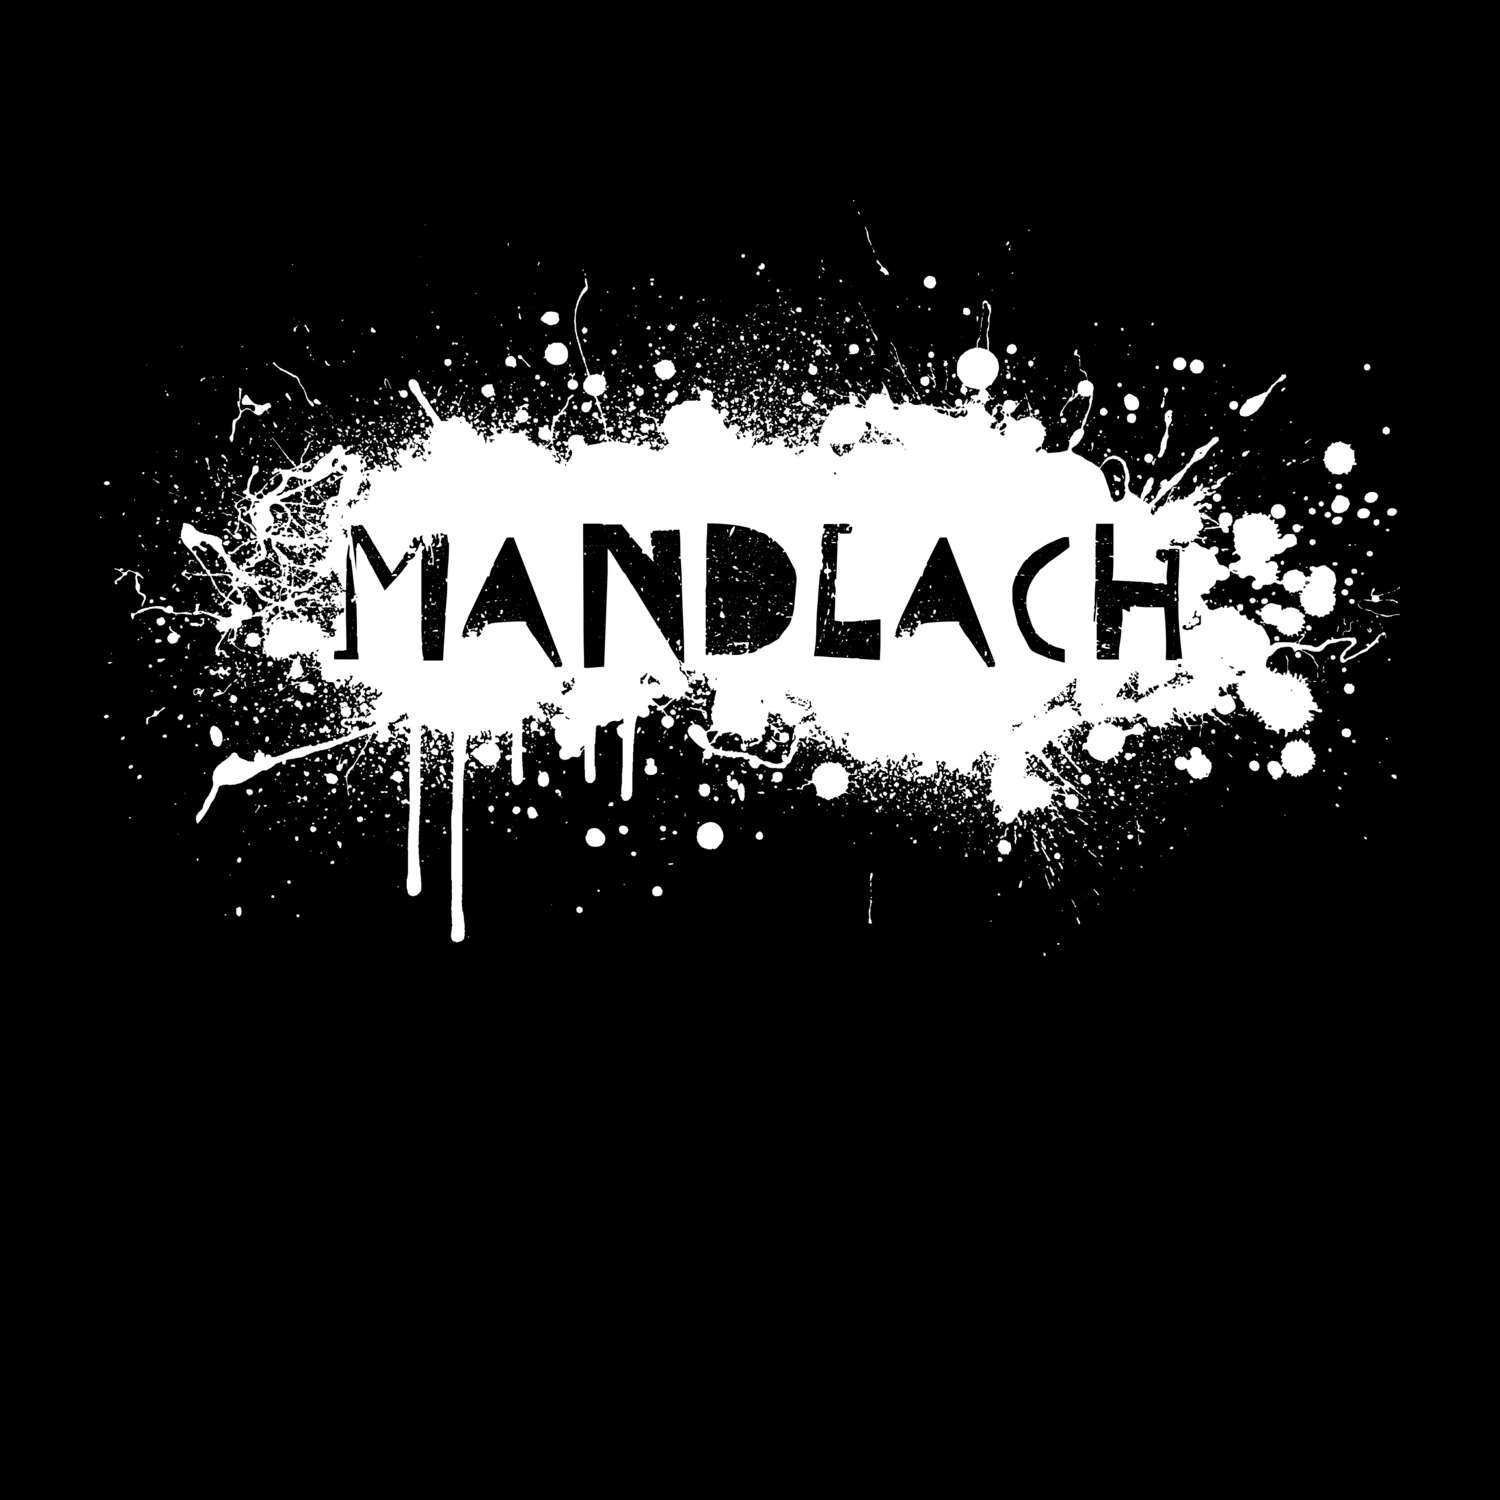 Mandlach T-Shirt »Paint Splash Punk«